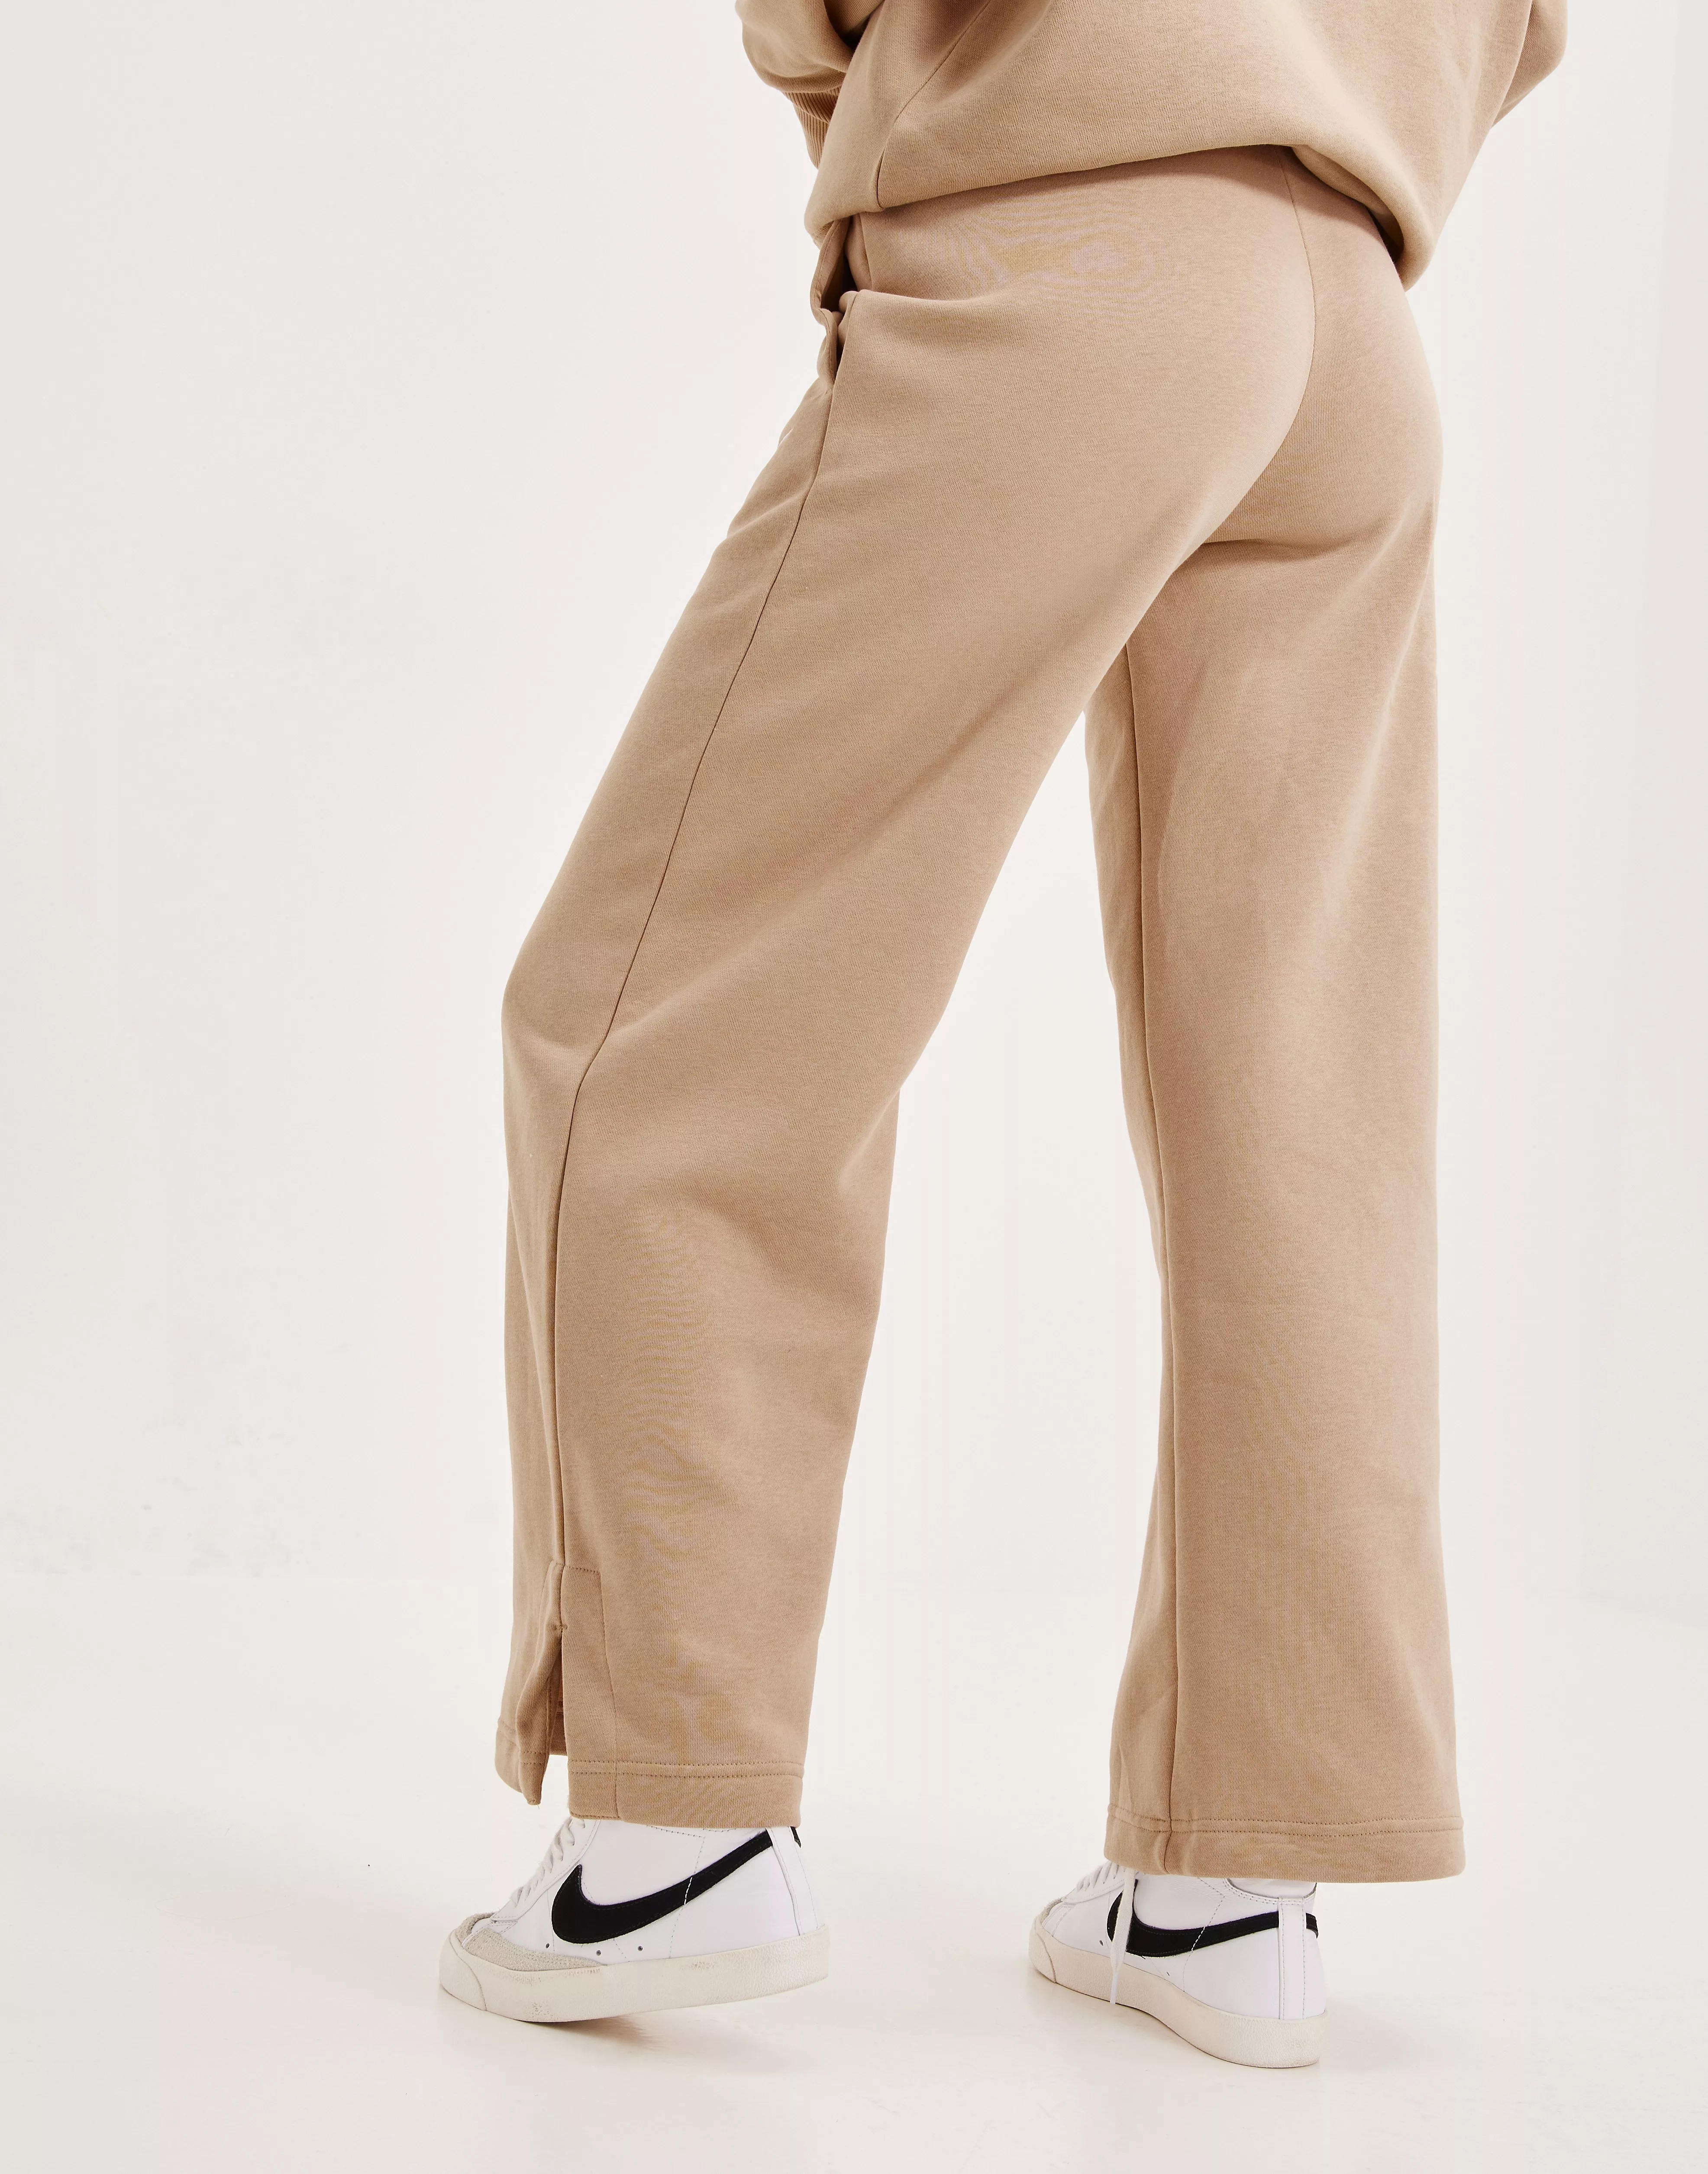 Pants Nike W NSW PHNX FLC HR PANT WIDE 